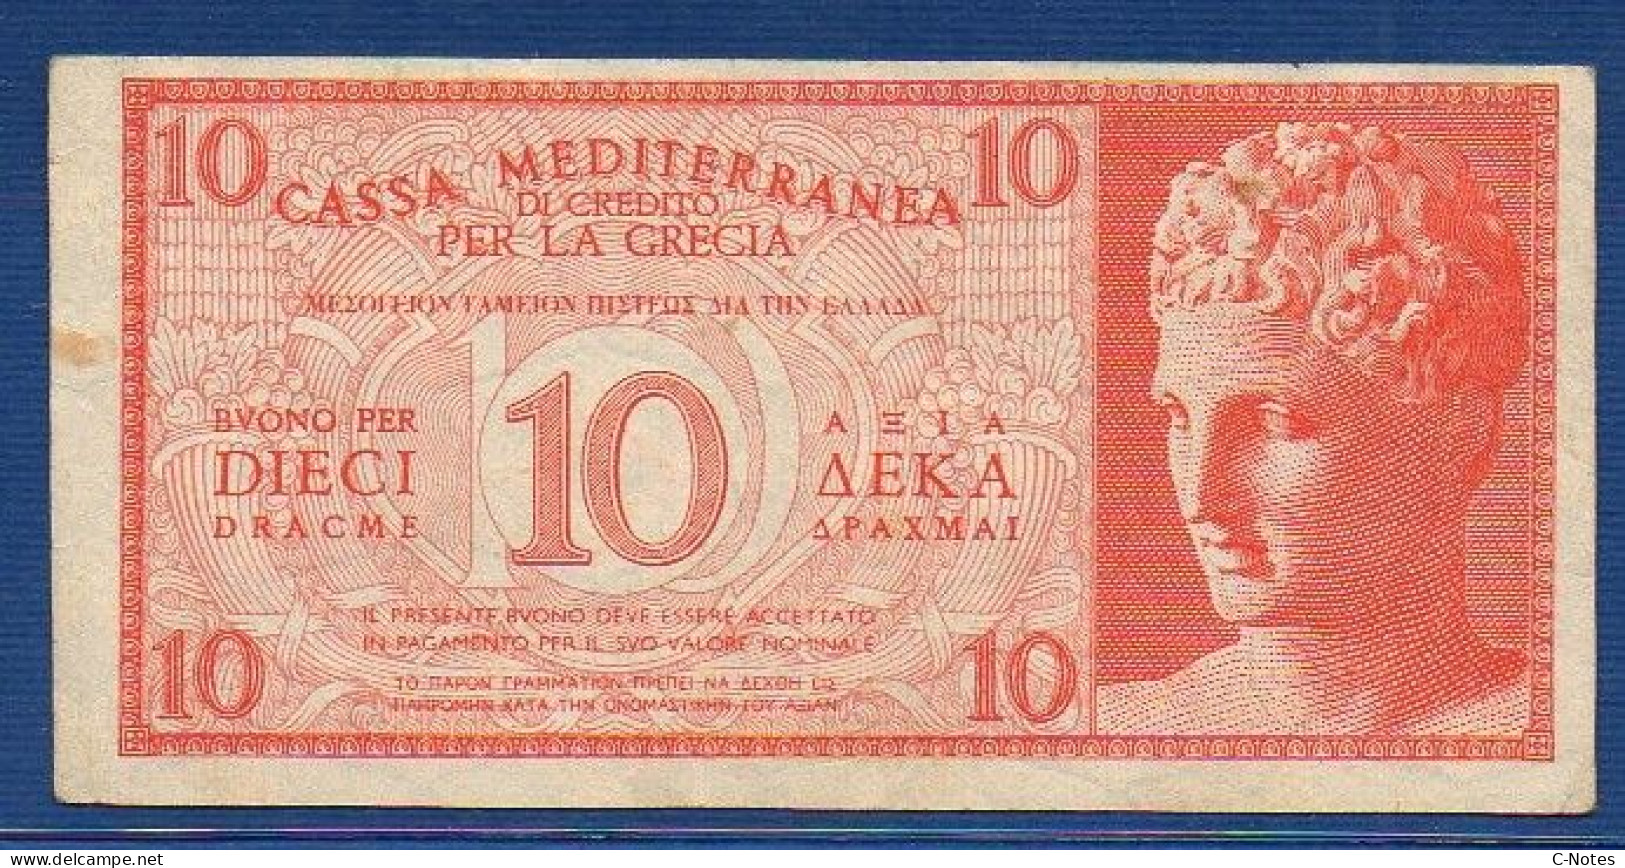 GREECE - Cassa Mediterranea Di Credito - P.M2 – 10 DRACME ND 1941 - CIRCULATED - SERIE 0002 636716 - Occupation Italienne Egéenne